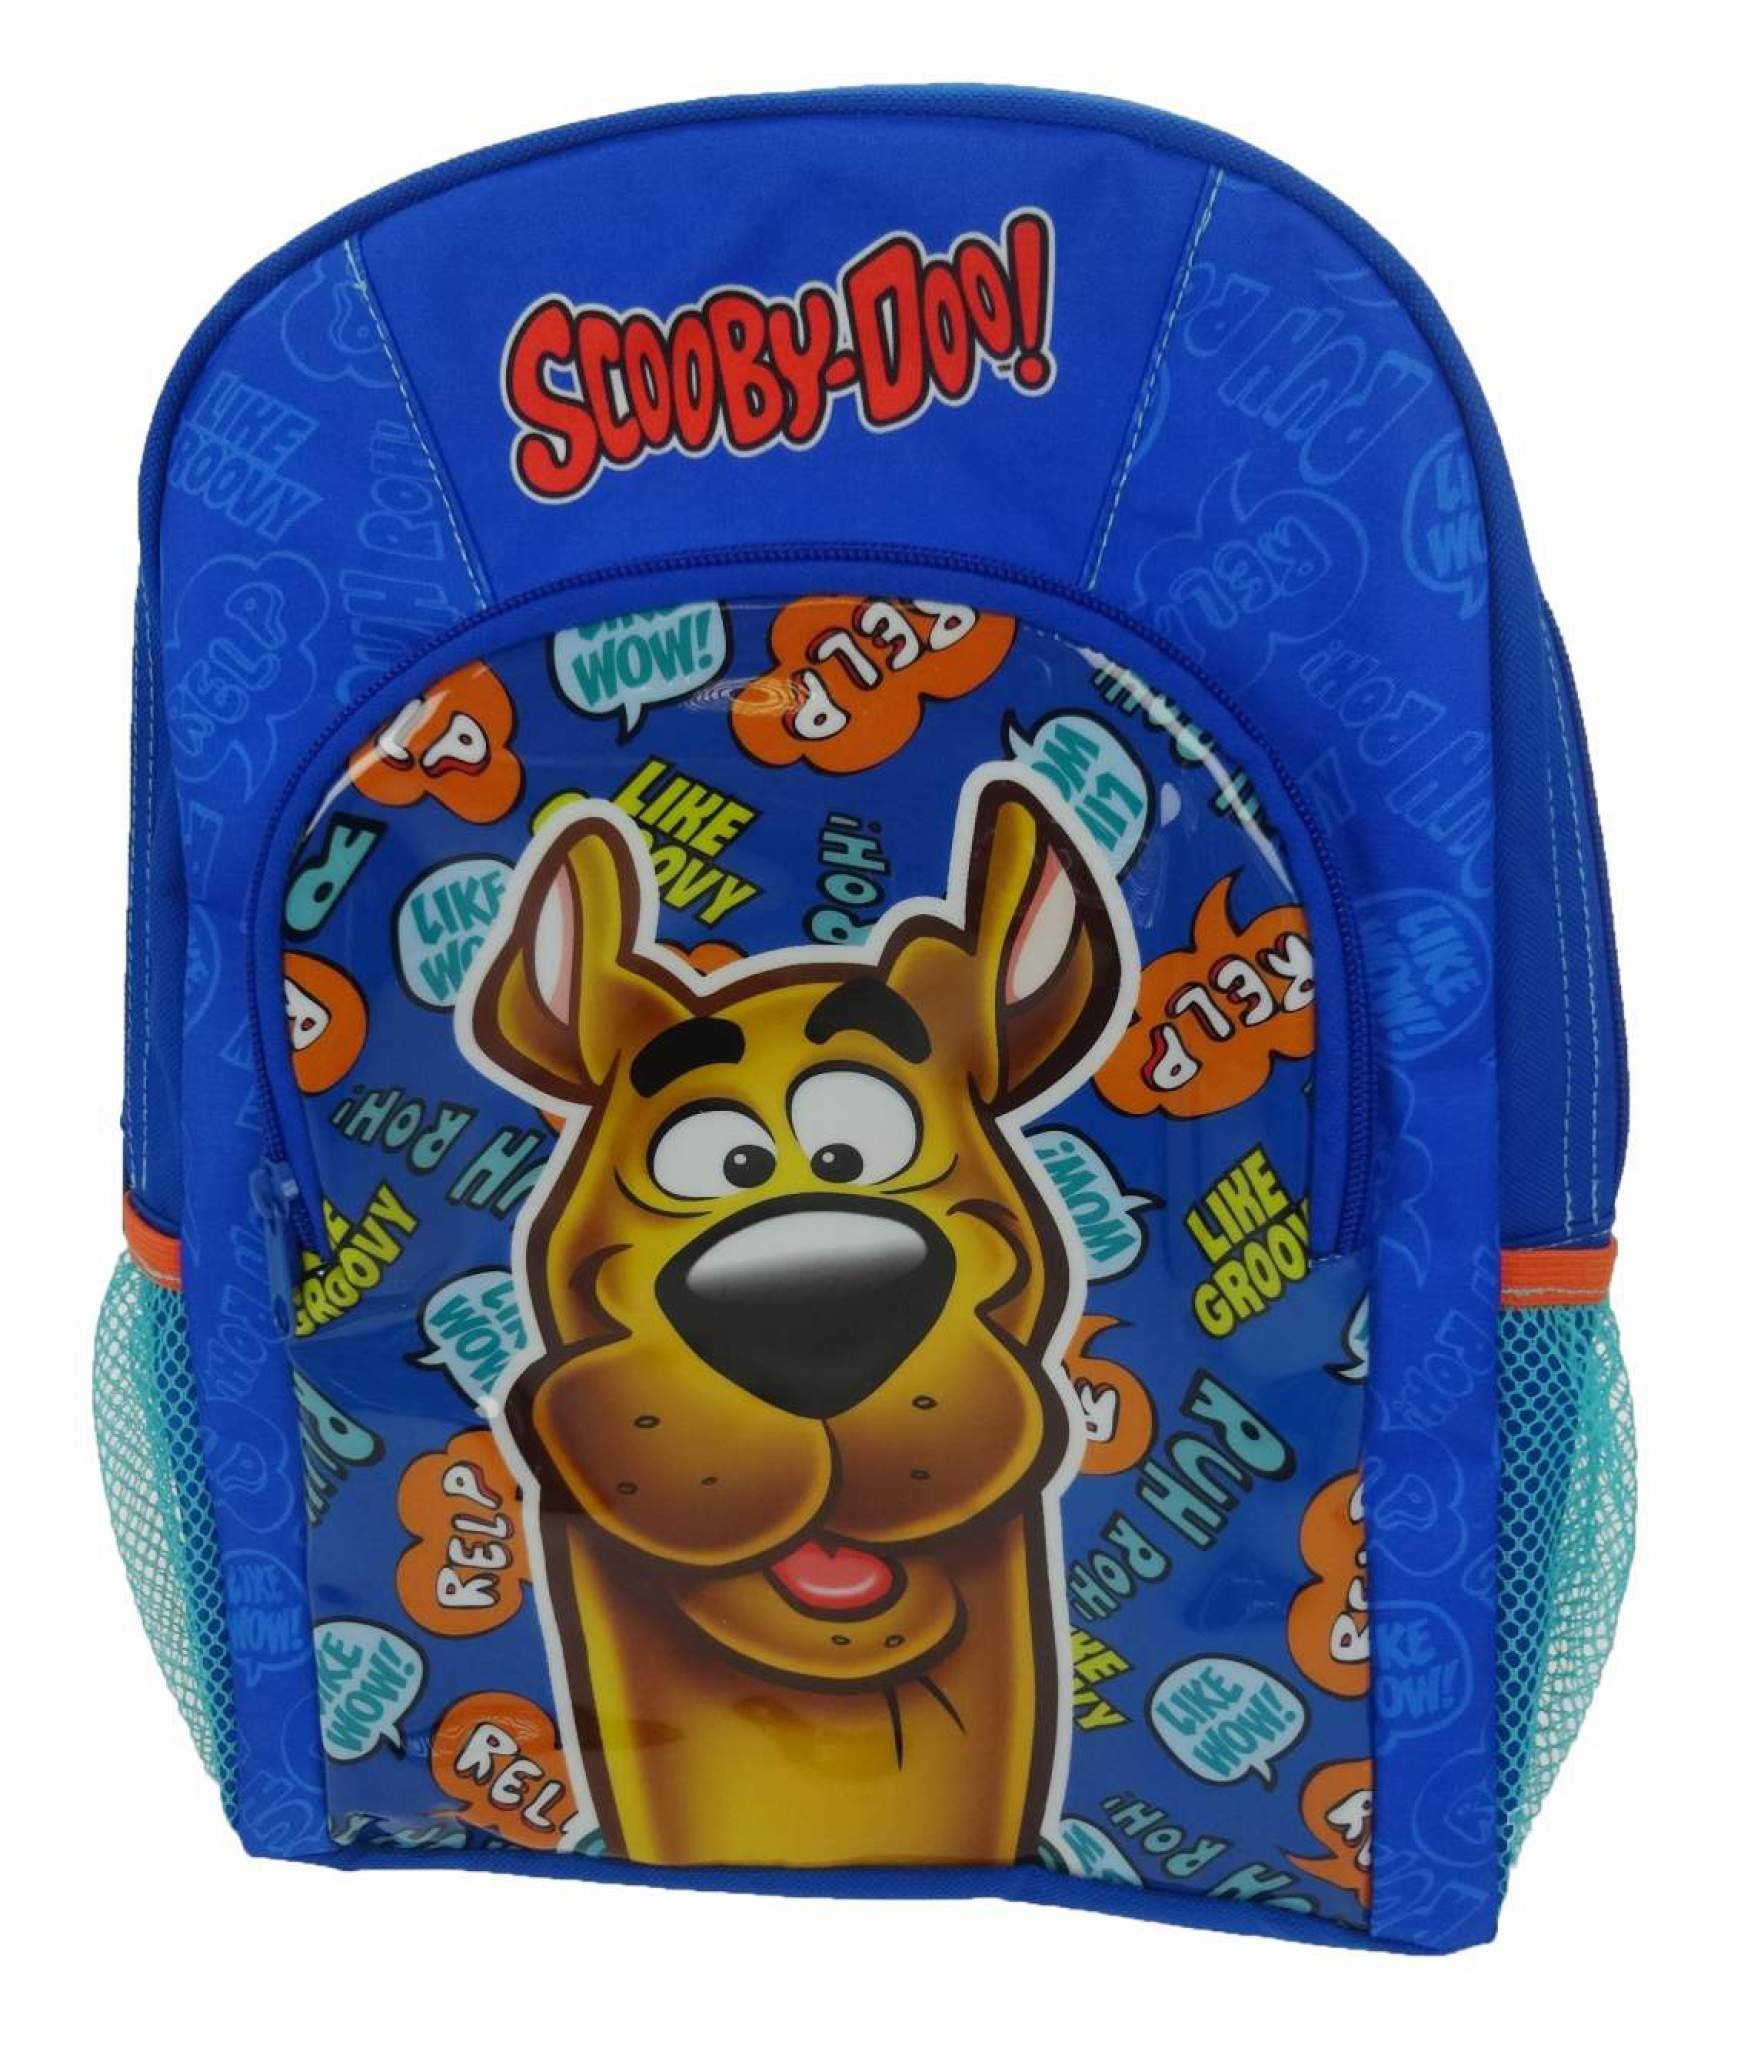 Scooby Doo 'Sports' School Bag Rucksack Backpack